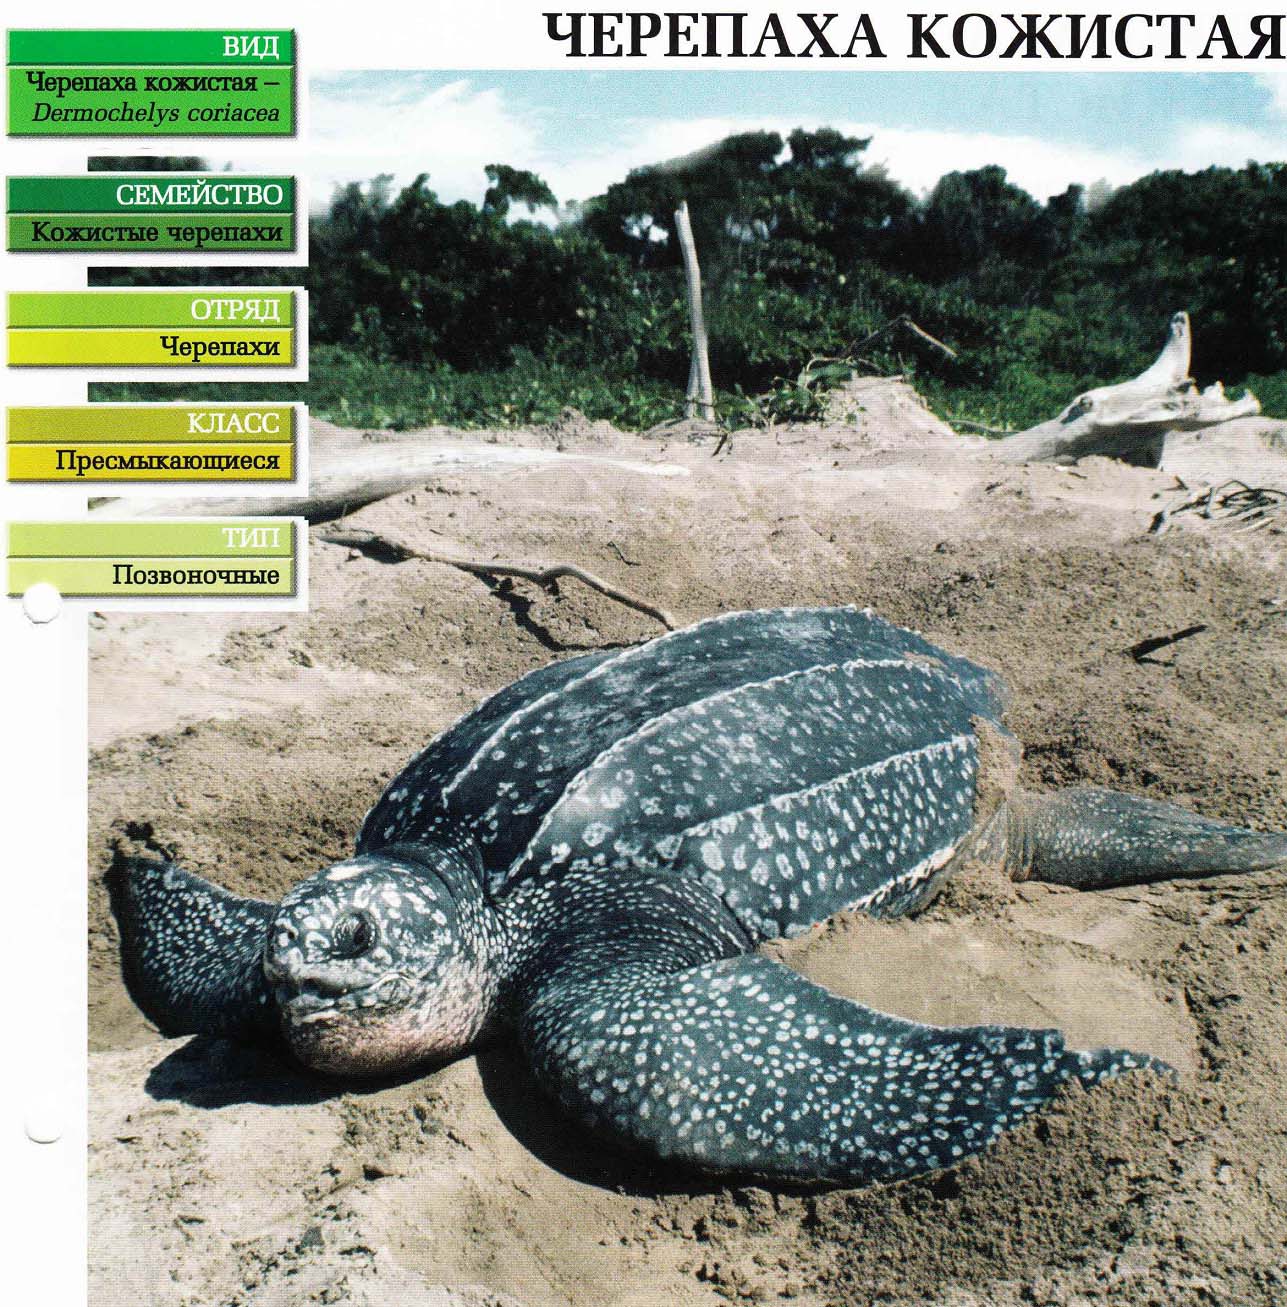 Систематика (научная классификация) черепахи кожистой. Dermochelys coriacea.